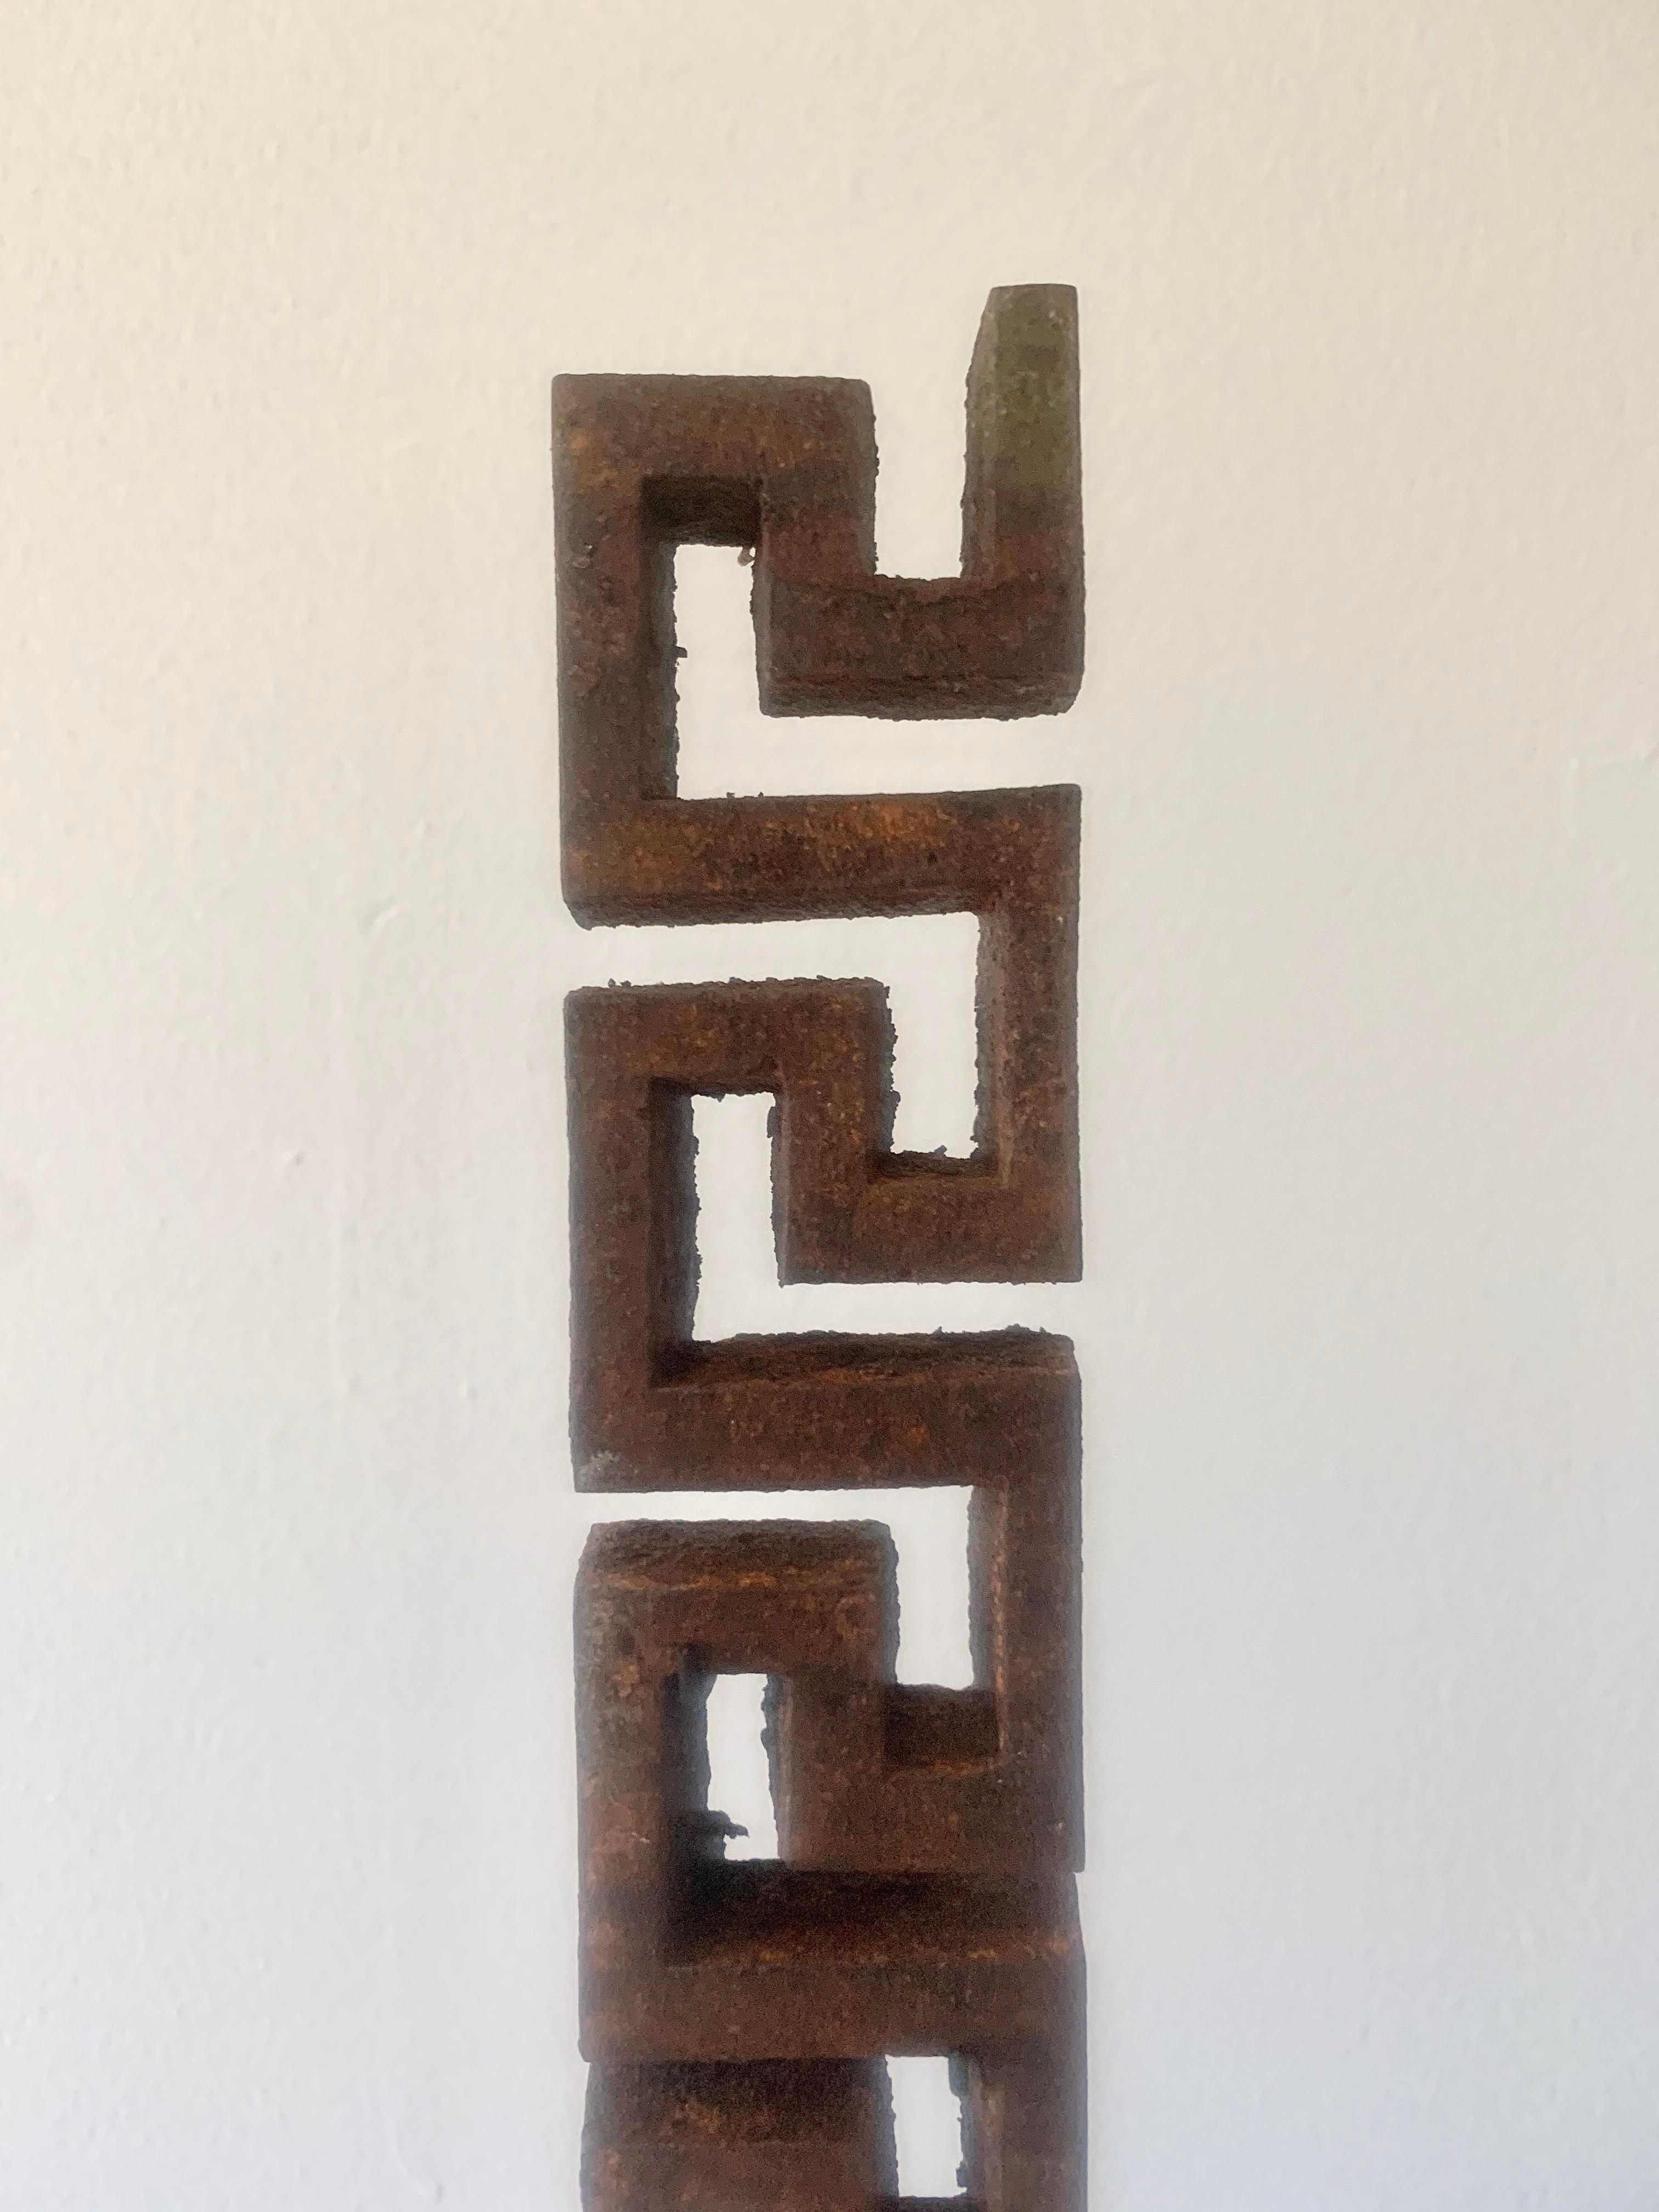 Un ensemble de 3 fragments architecturaux en fer du début du 20ème siècle en forme de clé grecque sur des supports en acier noir personnalisés. Chaque fragment mesure 2ʺW × 0,5ʺD × 14ʺH tandis que les montures sont de 3 tailles différentes qui